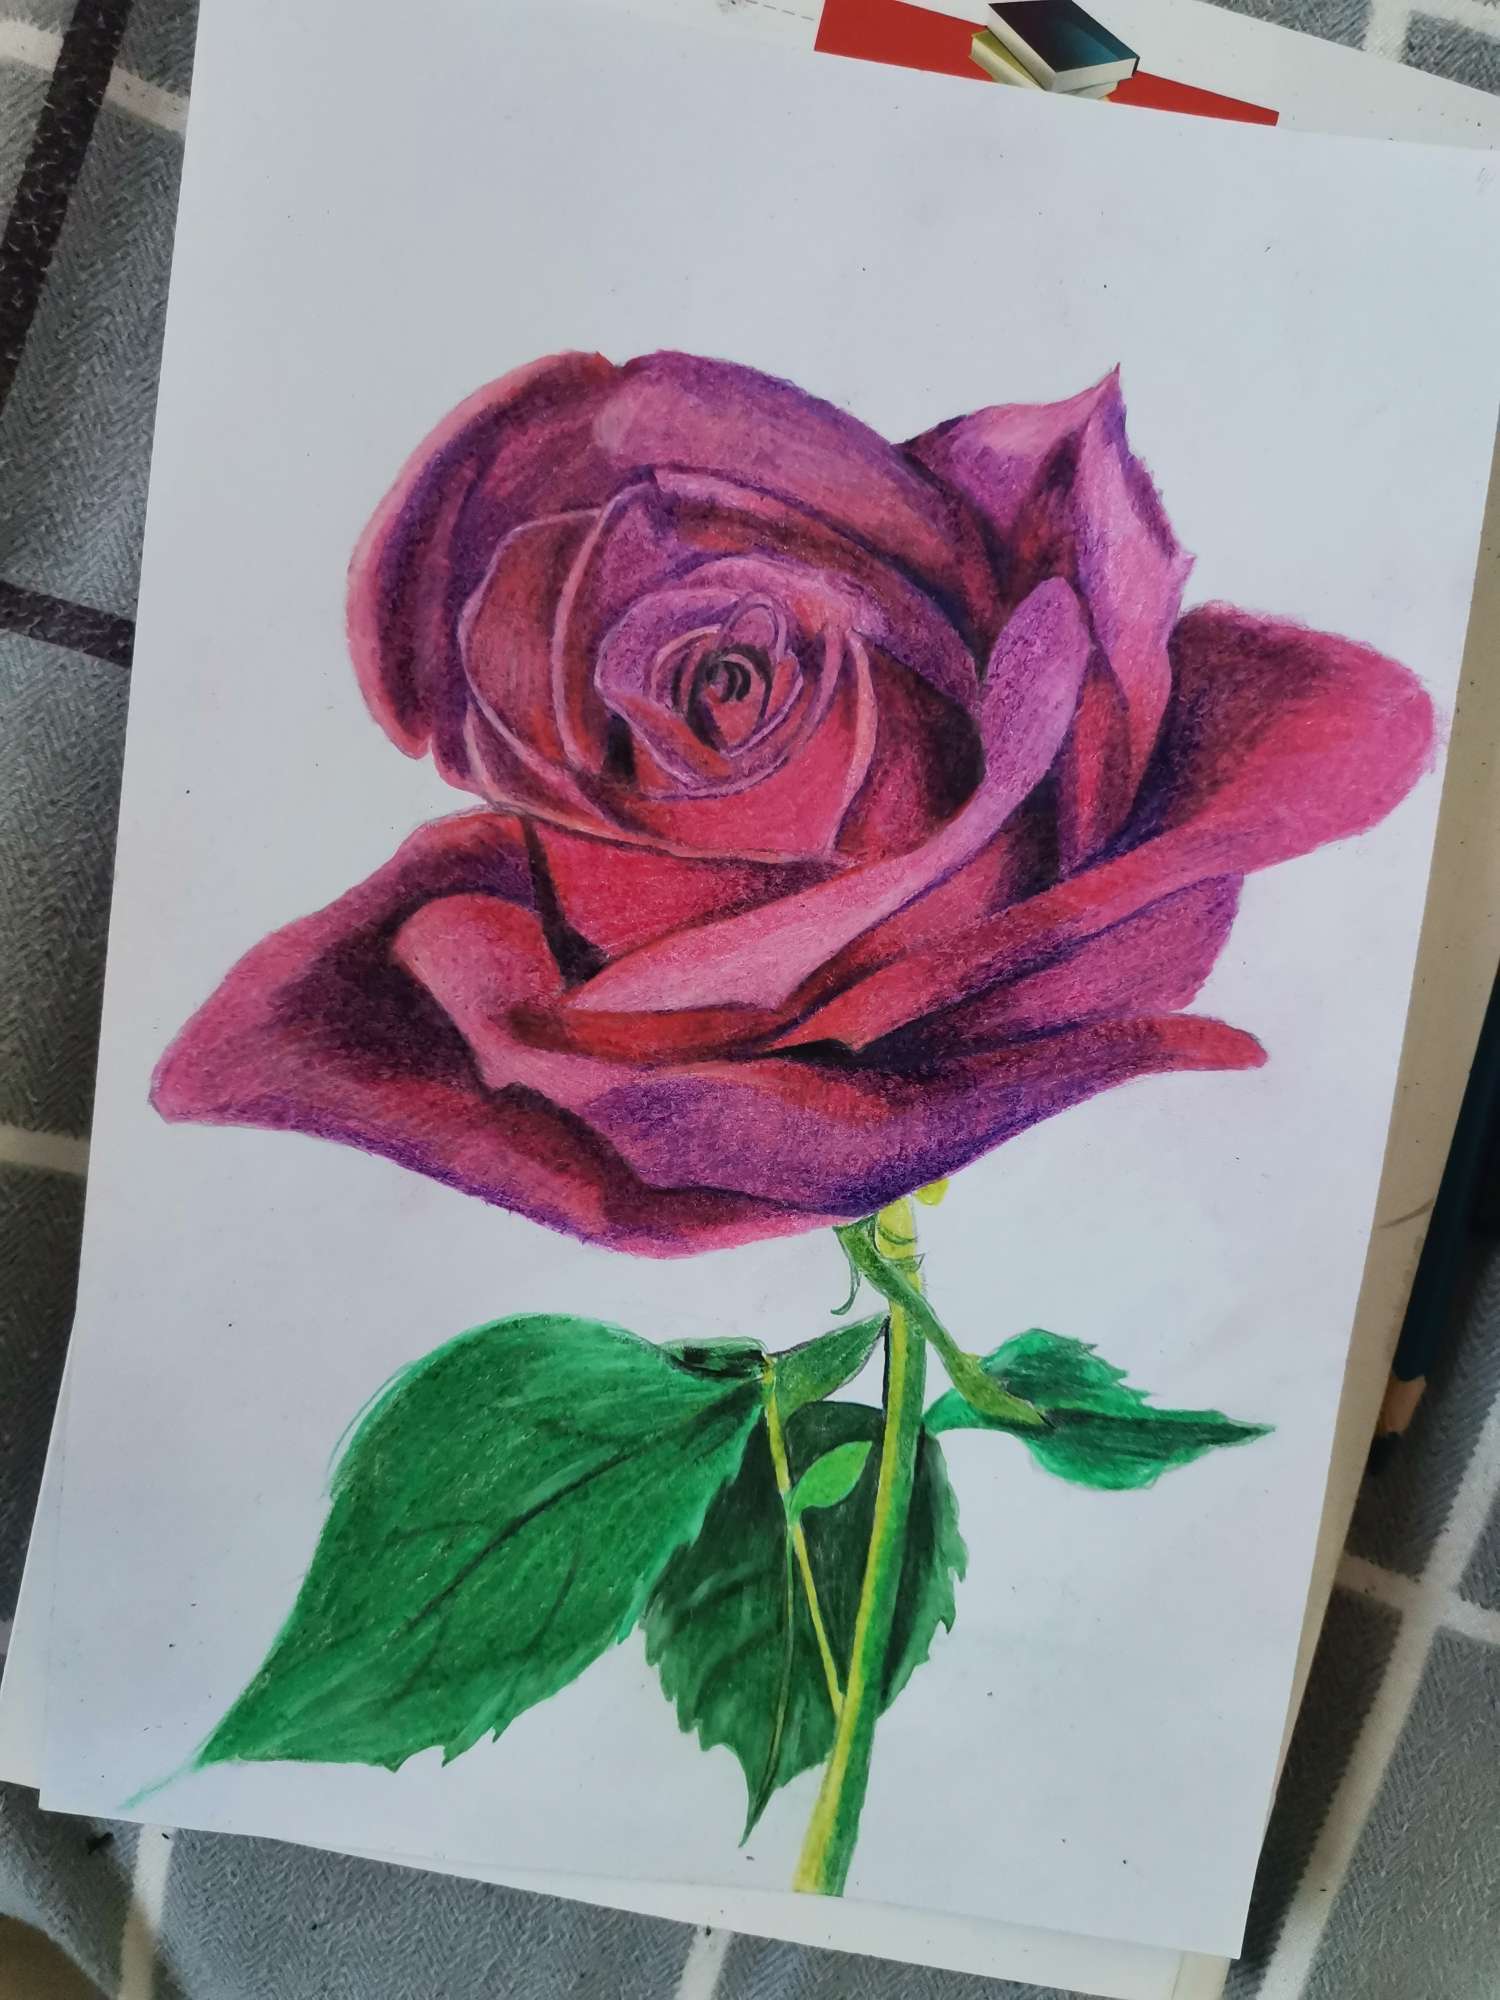 零基础也可以画出美丽的玫瑰花🌹
喜欢的话给个赞哦👍谢谢！
